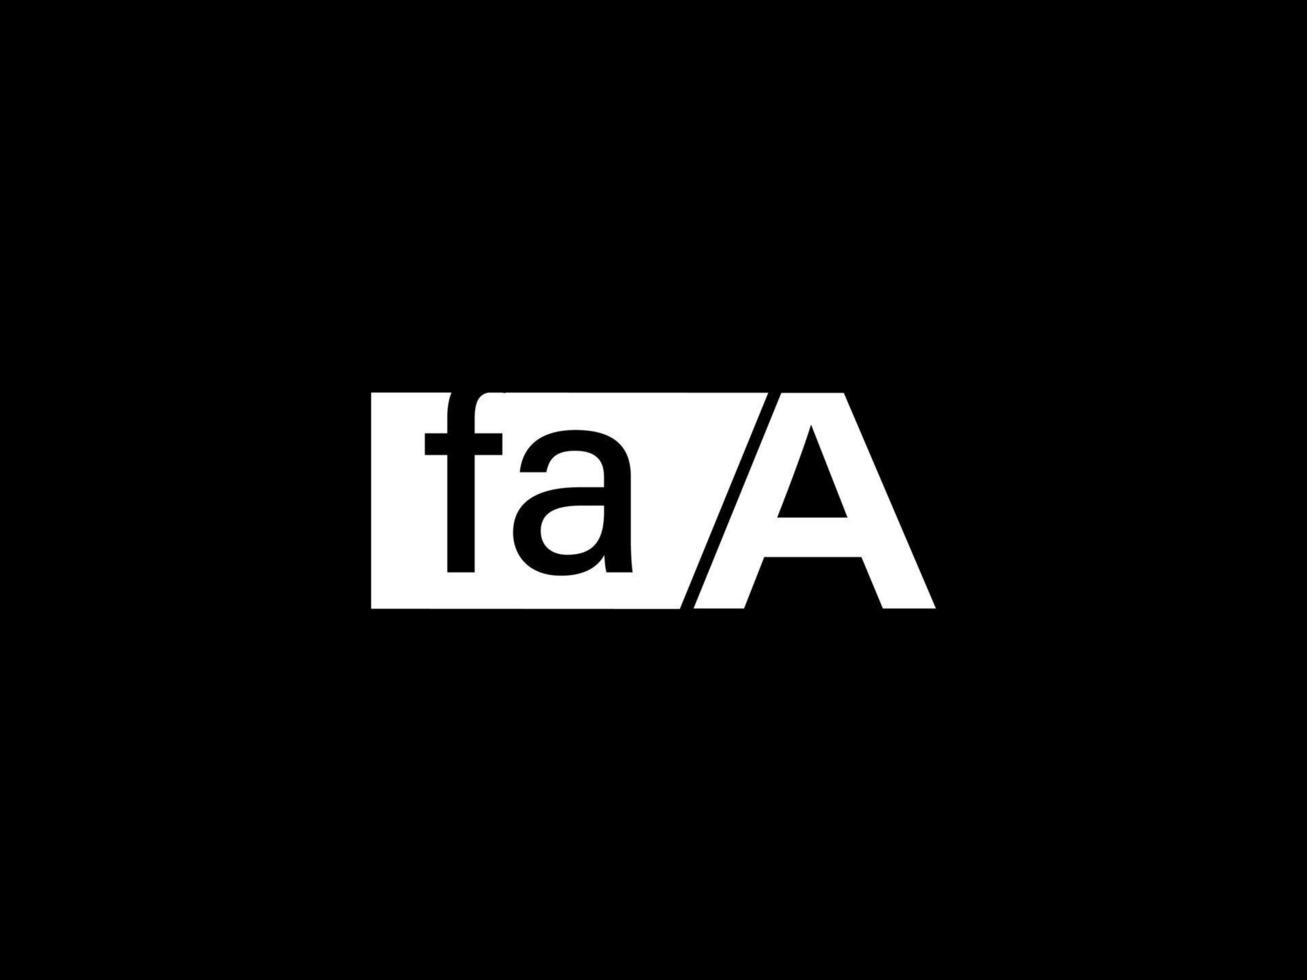 faa-Logo und Grafikdesign Vektorgrafiken, Symbole isoliert auf schwarzem Hintergrund vektor